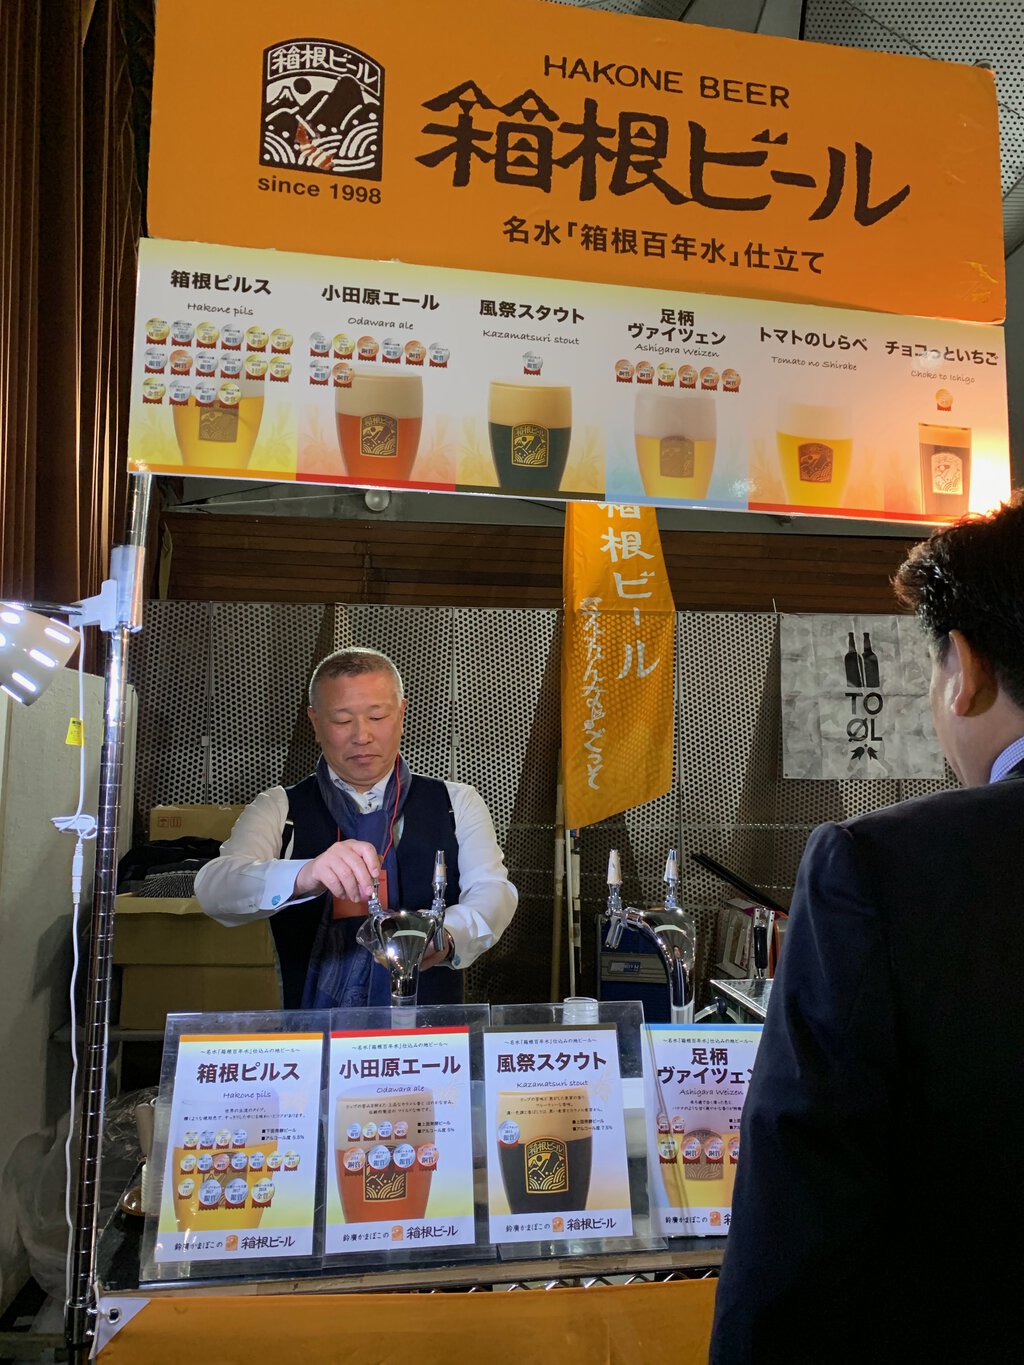 Hakone Beer